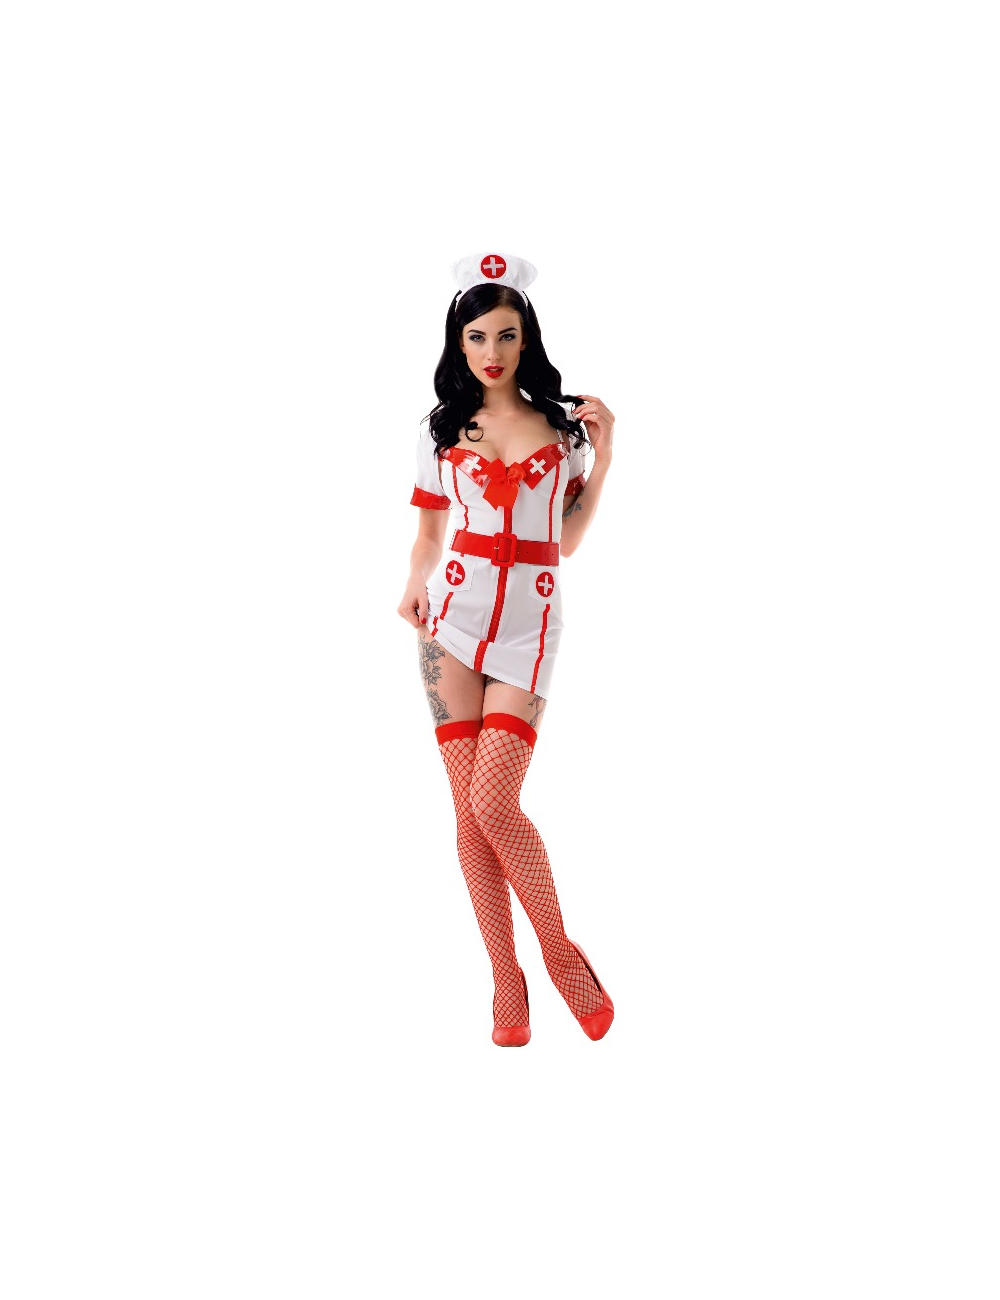 Le frivole - 02196 costume infirmière ensemble 4 pièces s / m